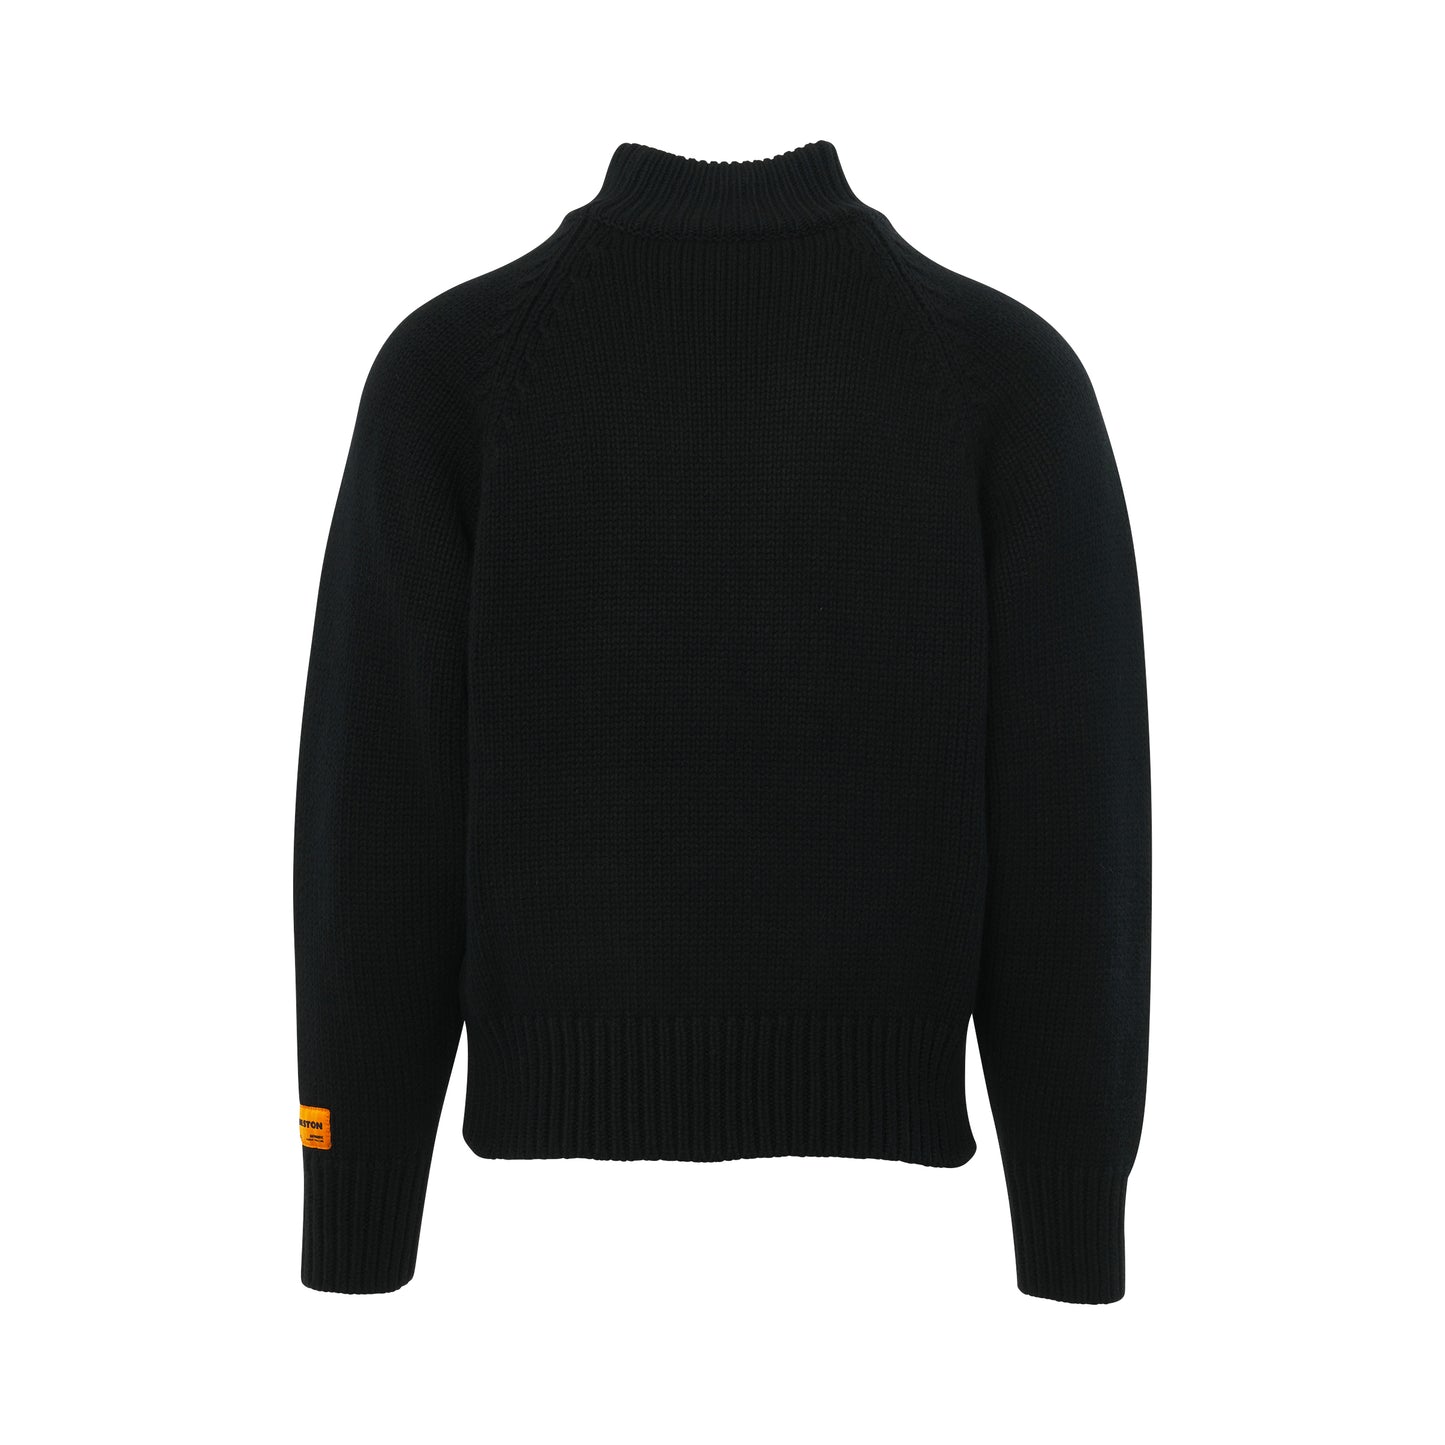 CTNMB Heavy Knit Turtleneck Sweater in Black